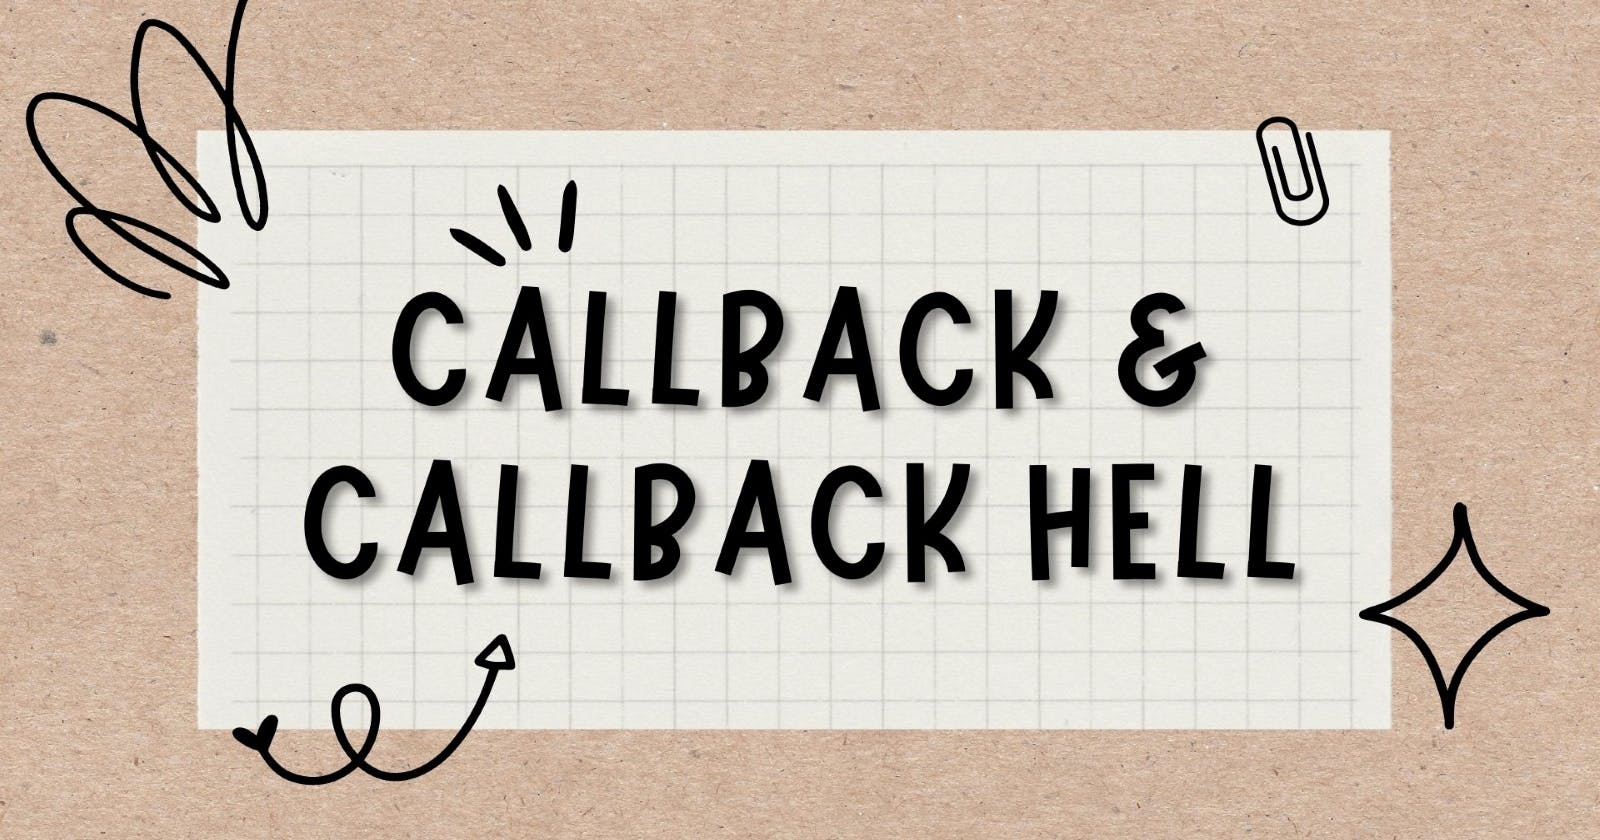 Callback & Callback Hell